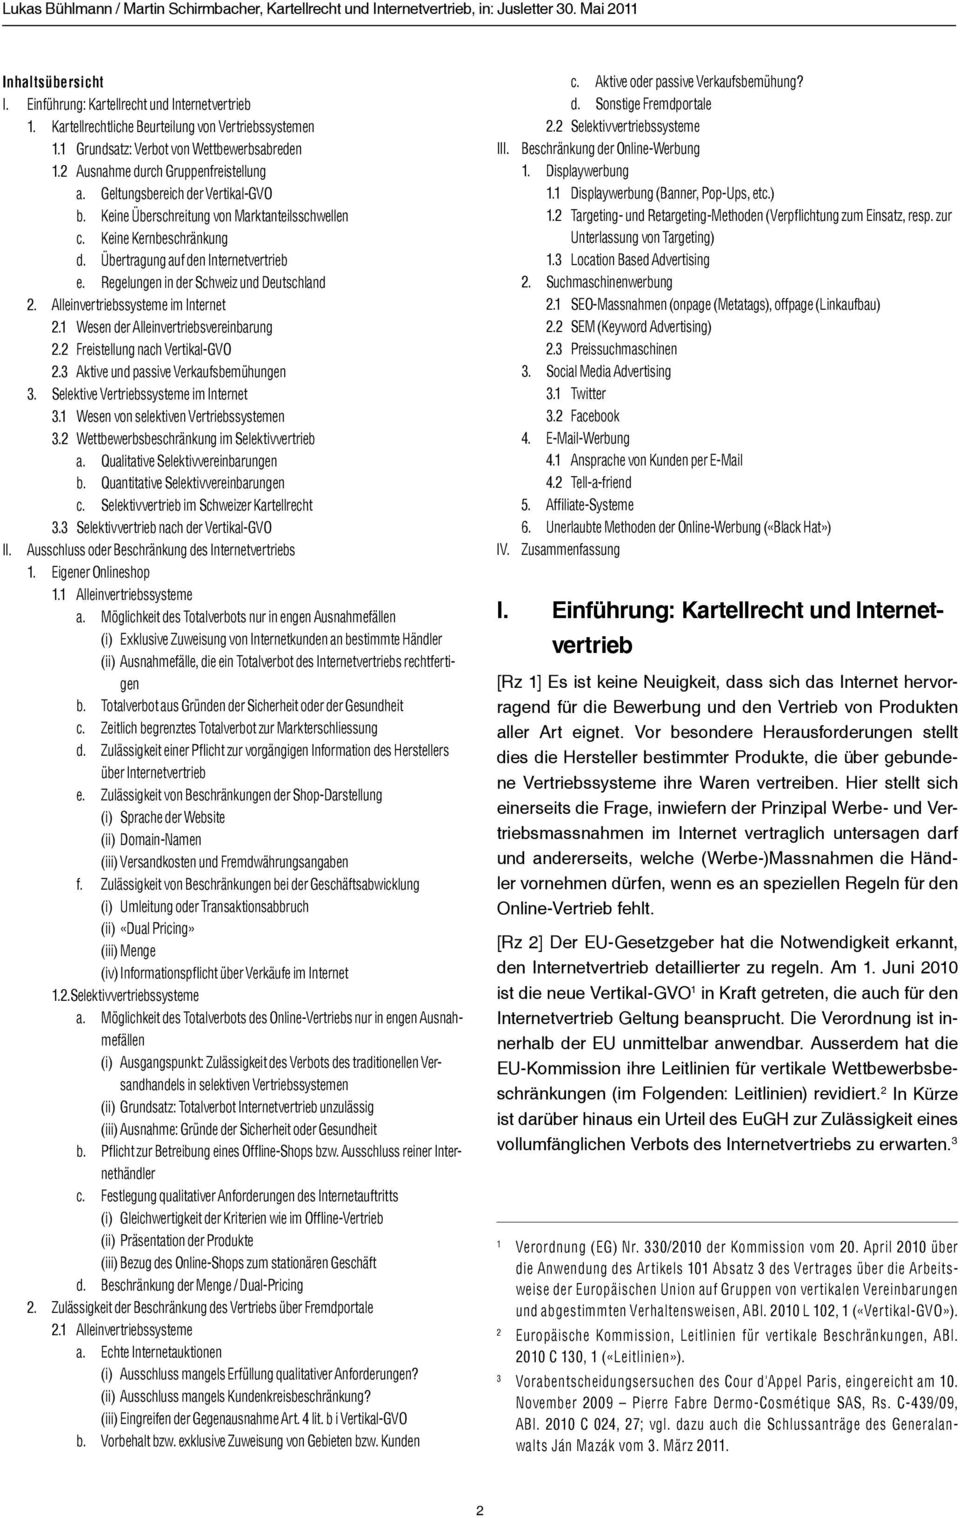 Regelungen in der Schweiz und Deutschland 2. Alleinvertriebssysteme im Internet 2.1 Wesen der Alleinvertriebsvereinbarung 2.2 Freistellung nach Vertikal-GVO 2.